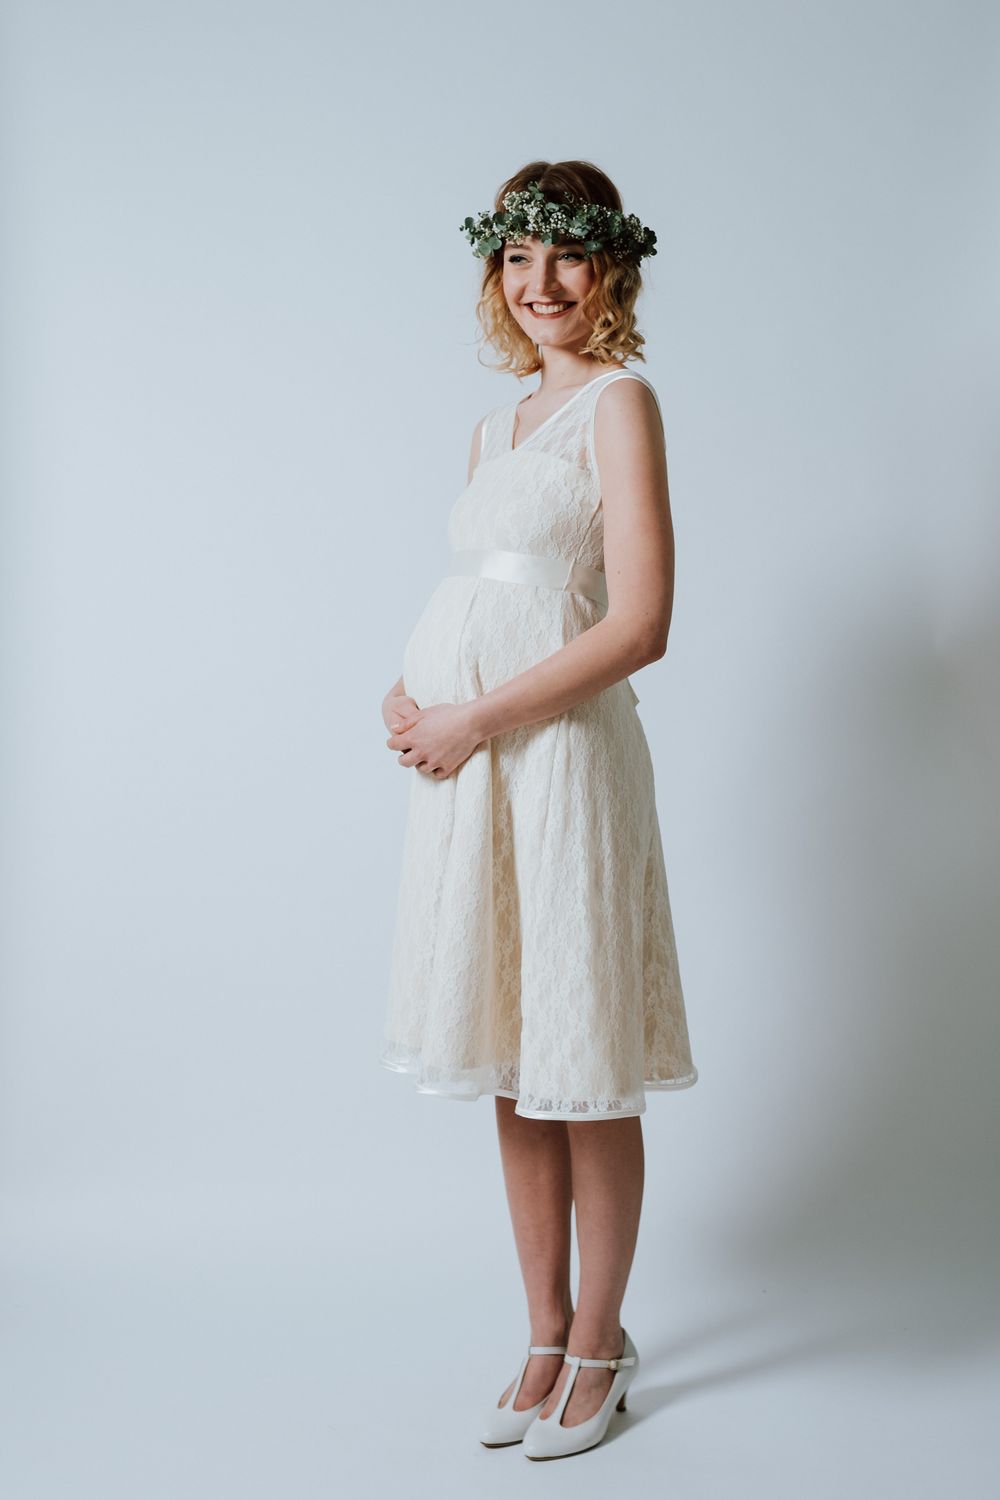 Eine schwangere Frau in einem weißen Kleid posiert für ein Foto.